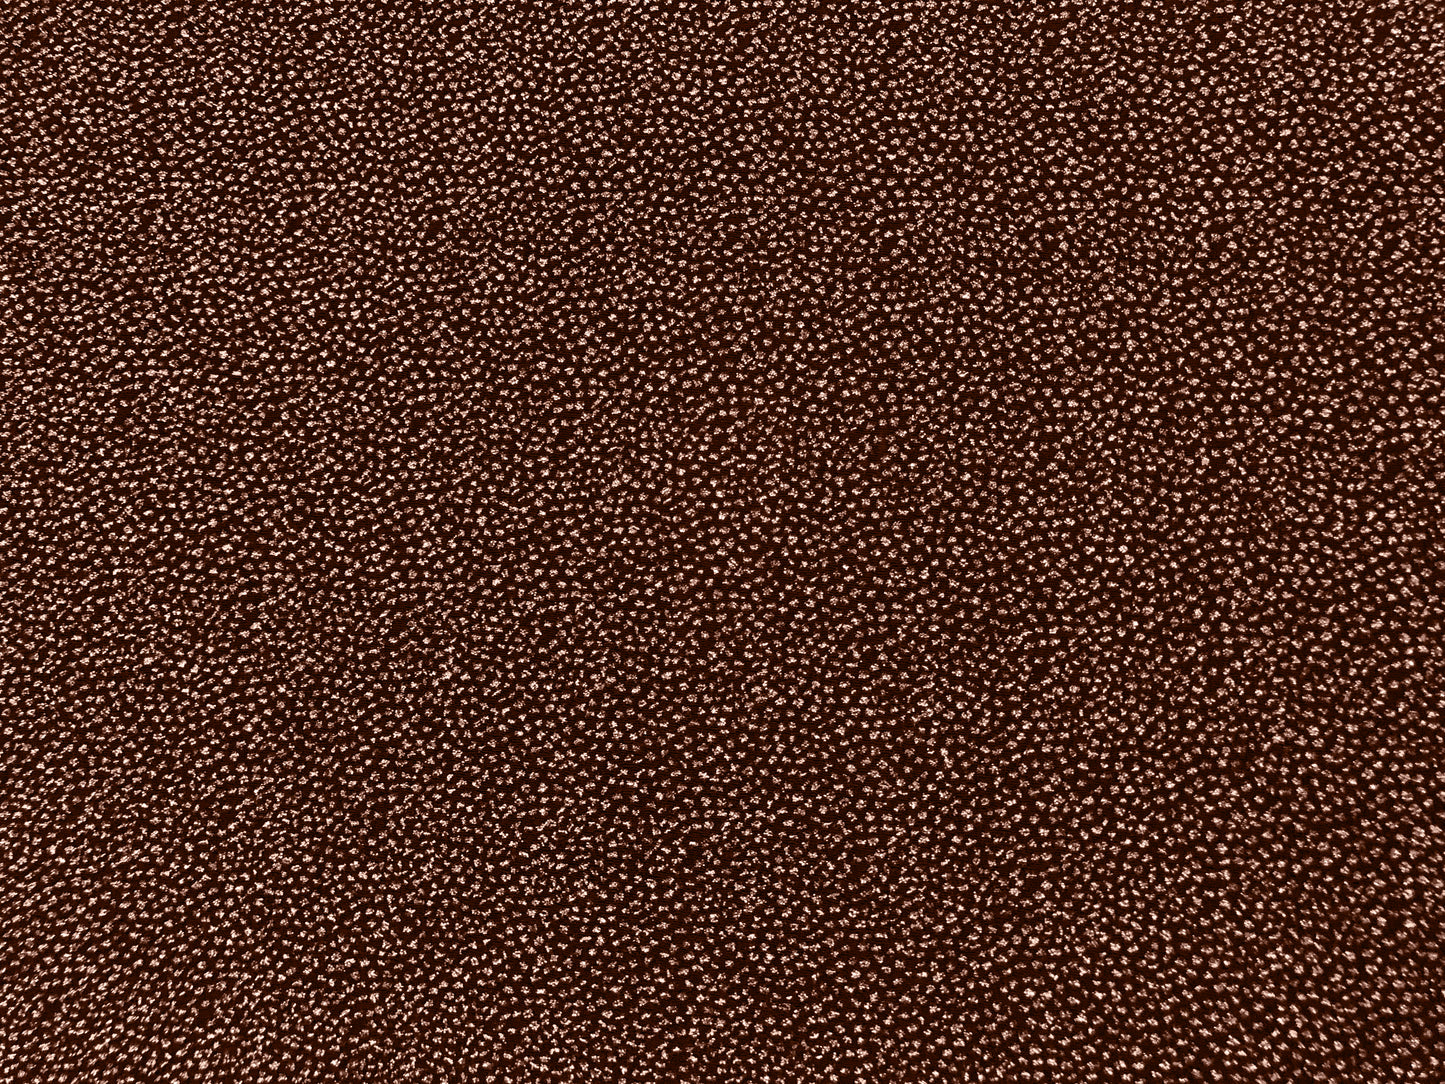 Metallic Copper Glitter Liverpool Fabric